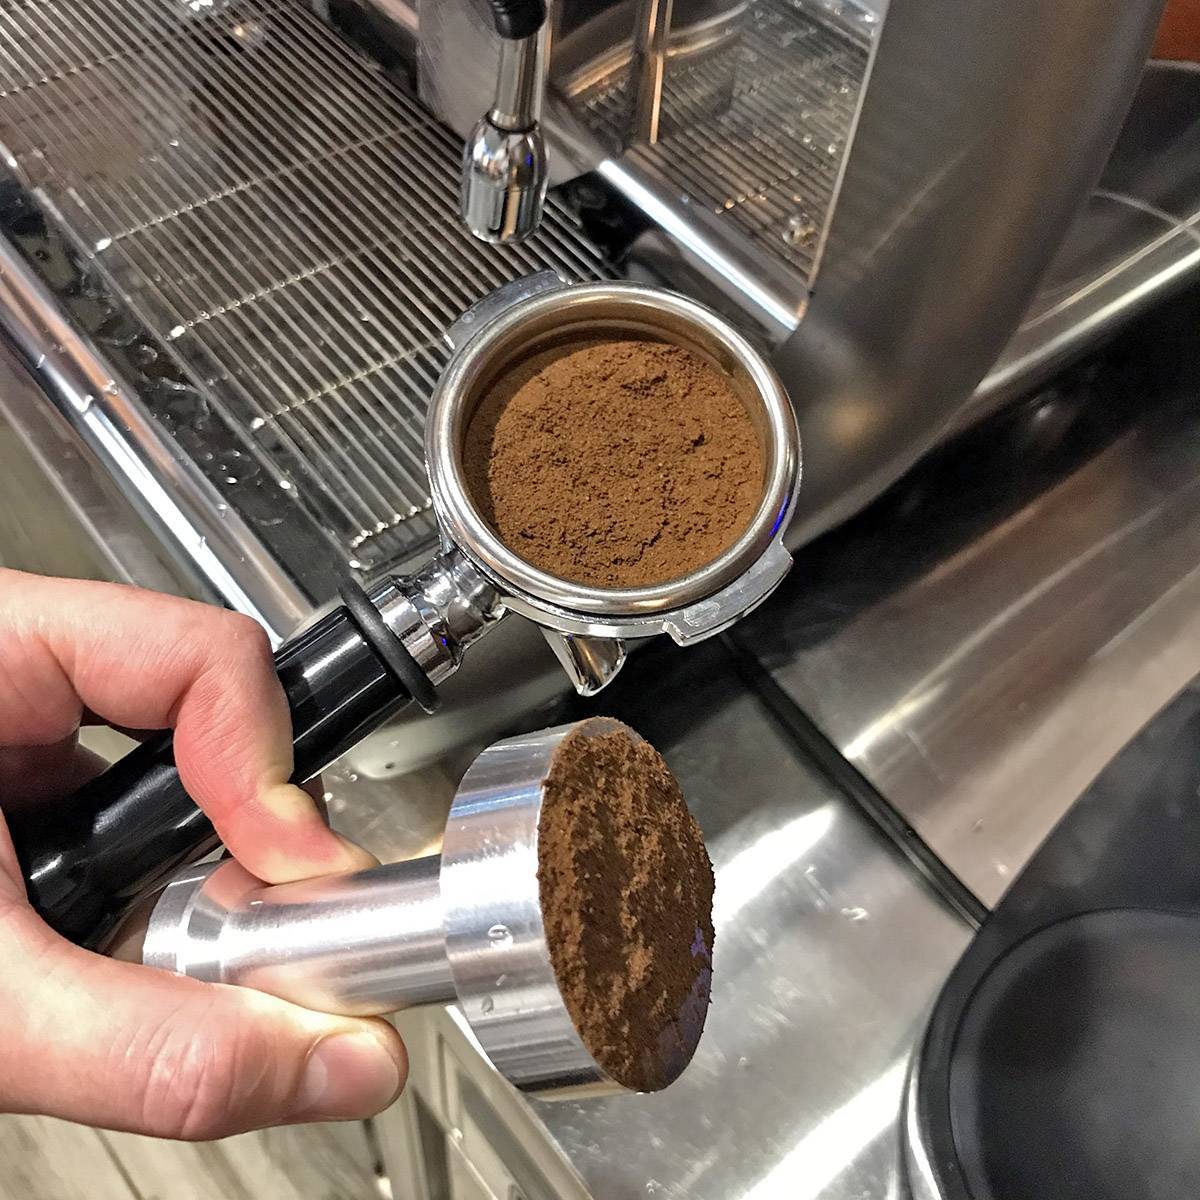 Как приготовить капучино в кофемашине – пошаговая инструкция